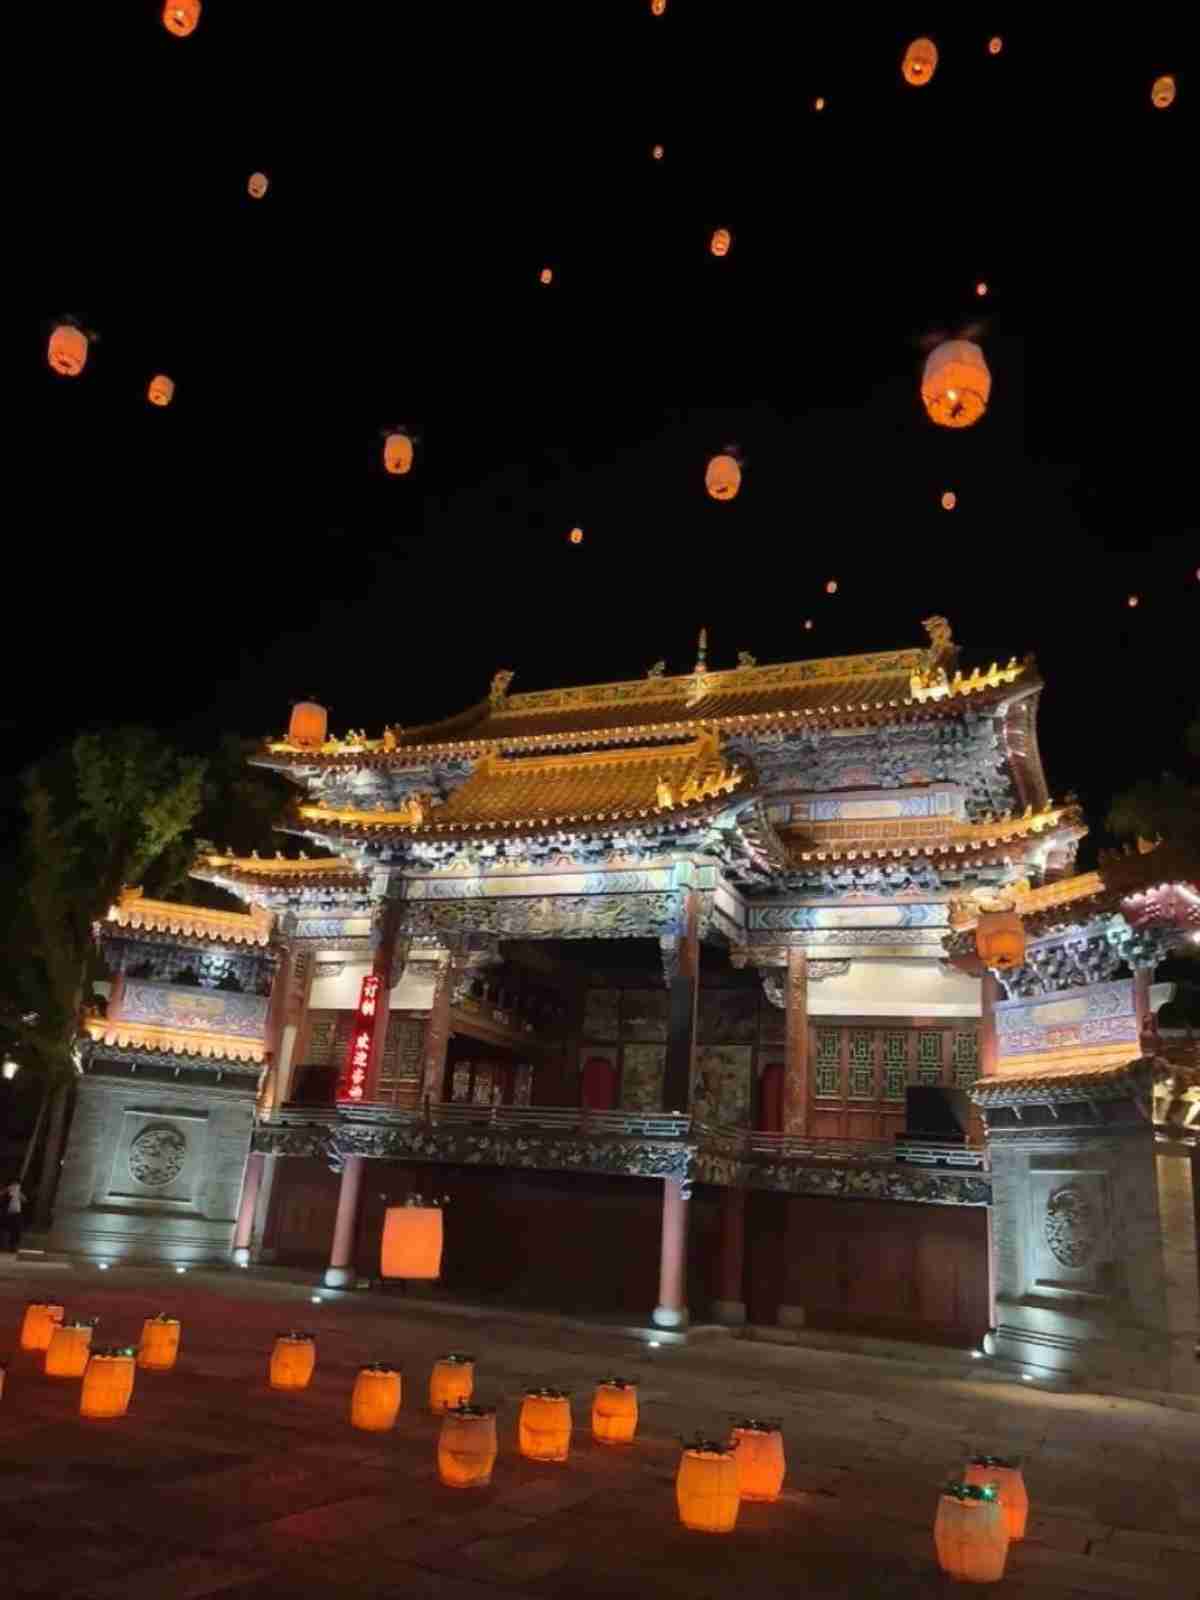 The Kongming lantern performance in Gubei Water town